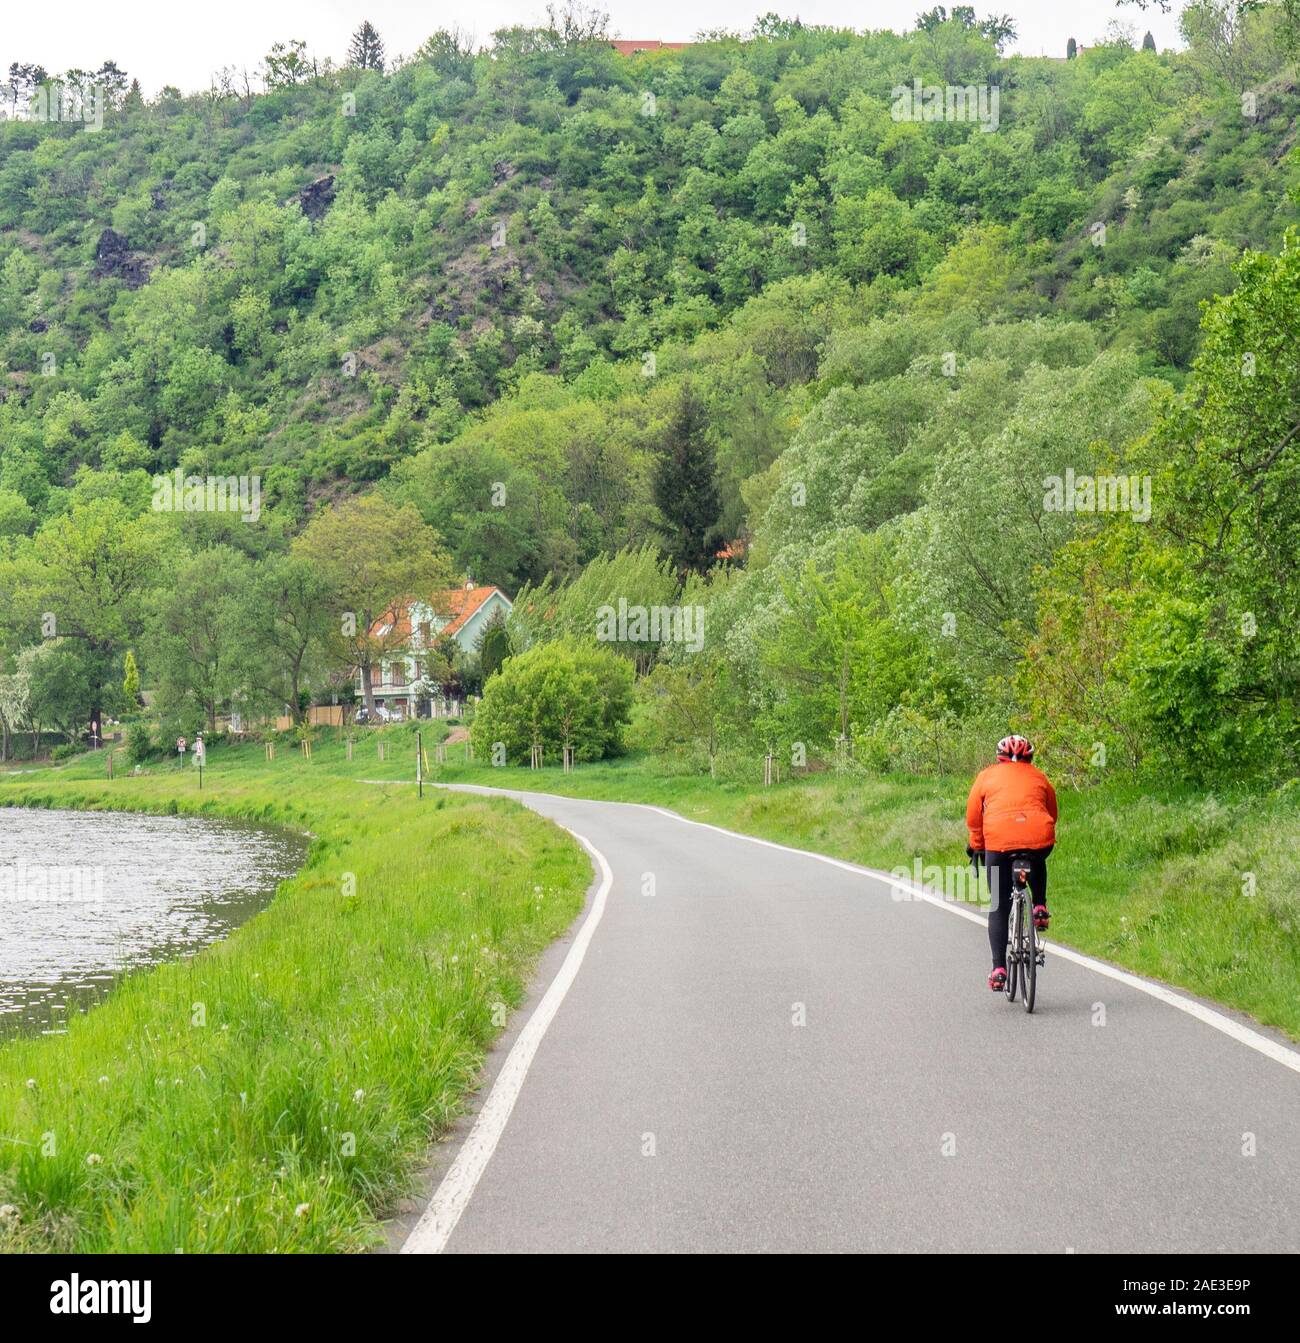 Frau Reisenden auf einem Fahrrad auf cycleway Moldau Radweg Eurovelo Route  7 entlang der Moldau zwischen Prag und Melnik Tschechische Republik  Stockfotografie - Alamy